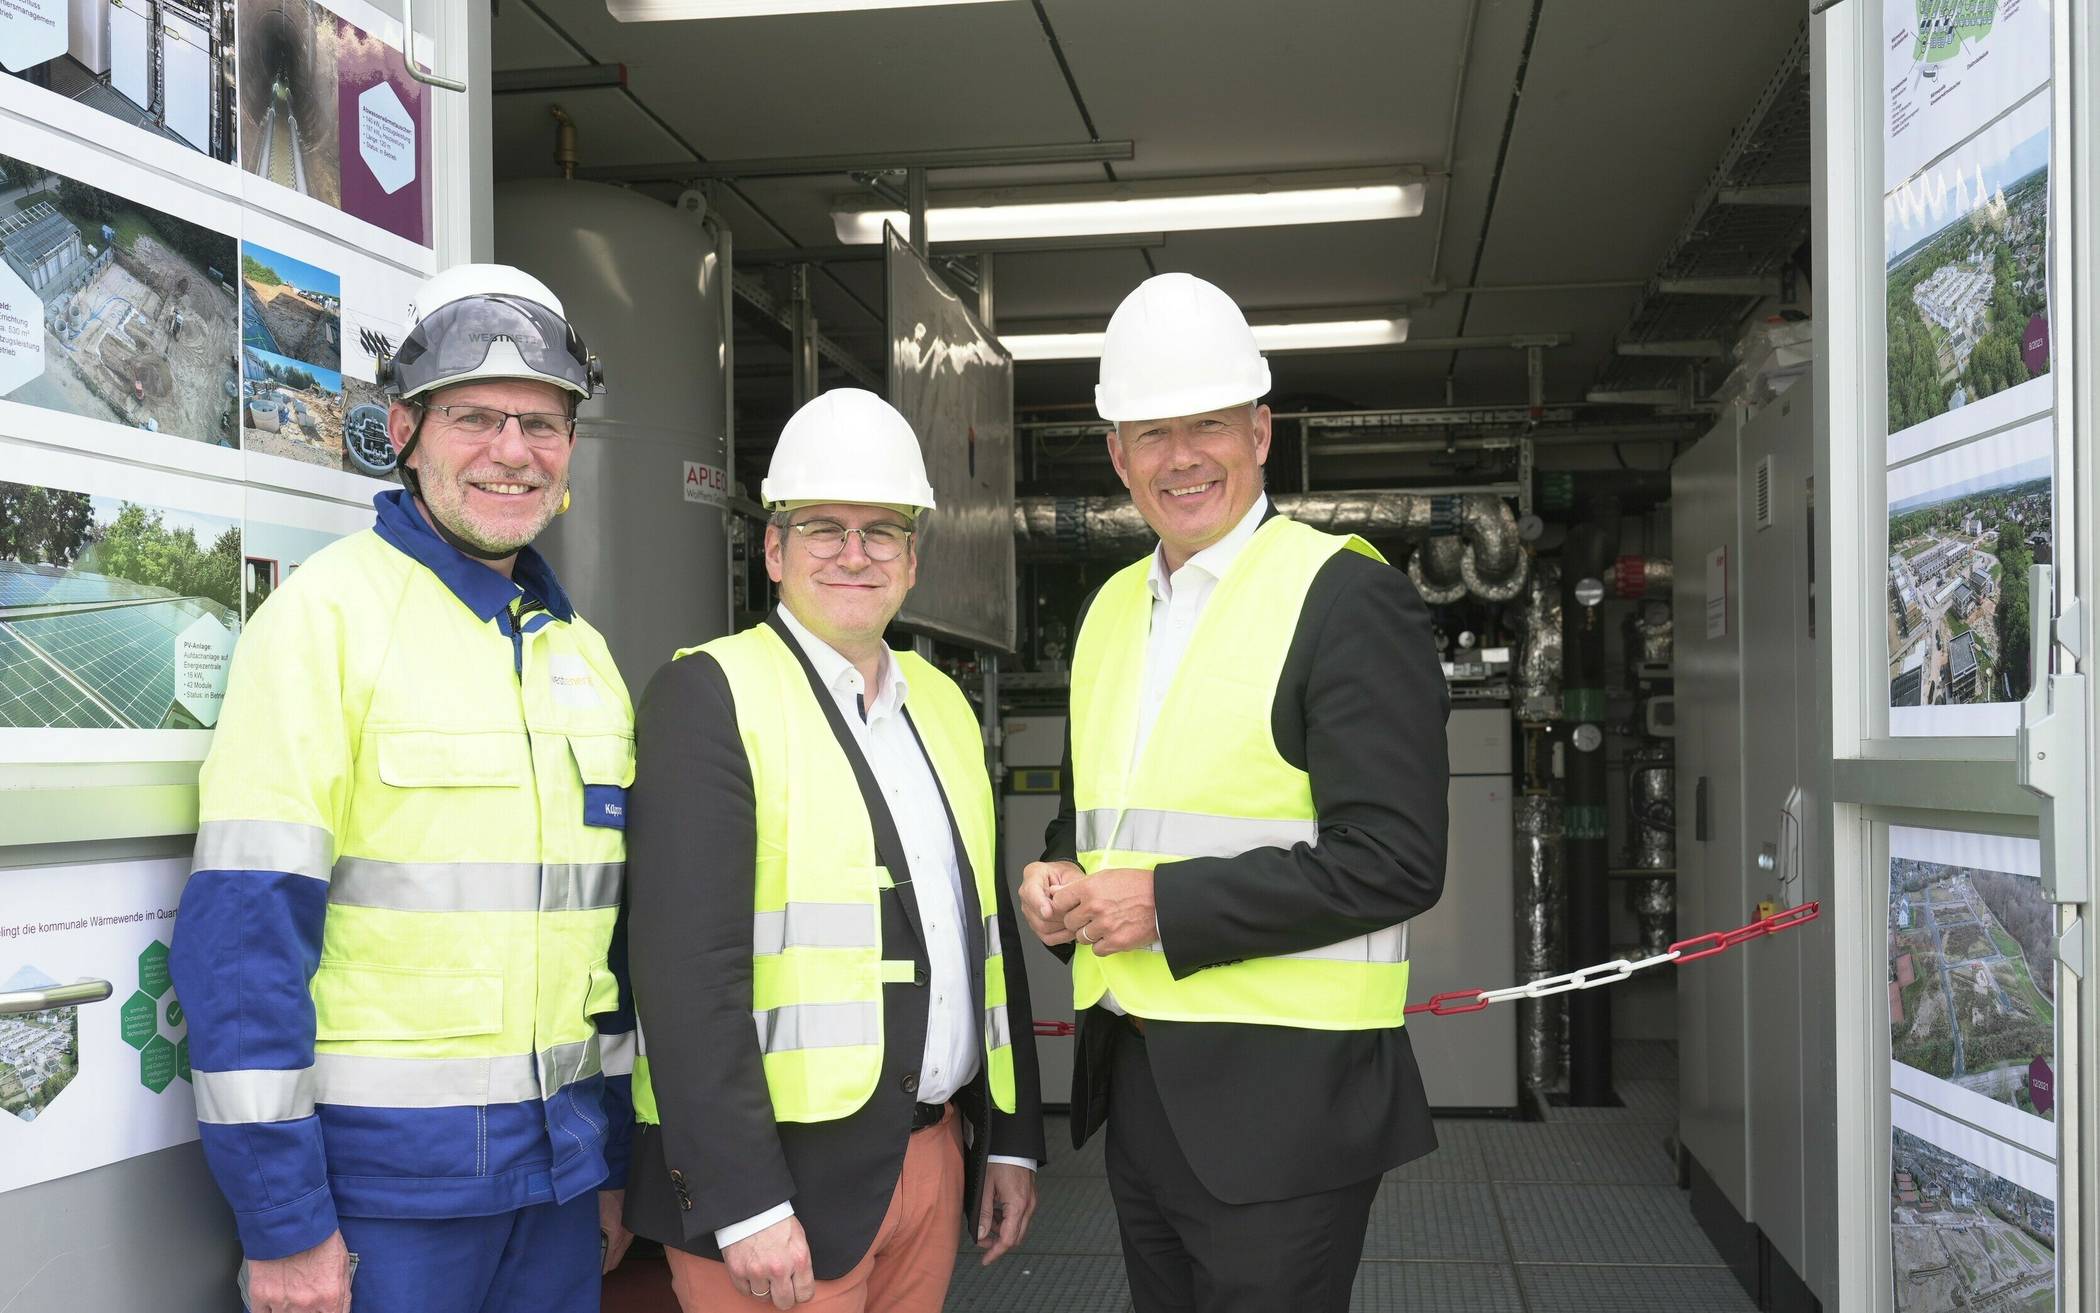  Von links: Dr. Stefan Küppers (Technikvorstand Westenergie), Sascha Solbach (Bürgermeister) und Frank Rock (Landrat des Rhein-Erft-Kreises).  Foto: Klaus Görgen  